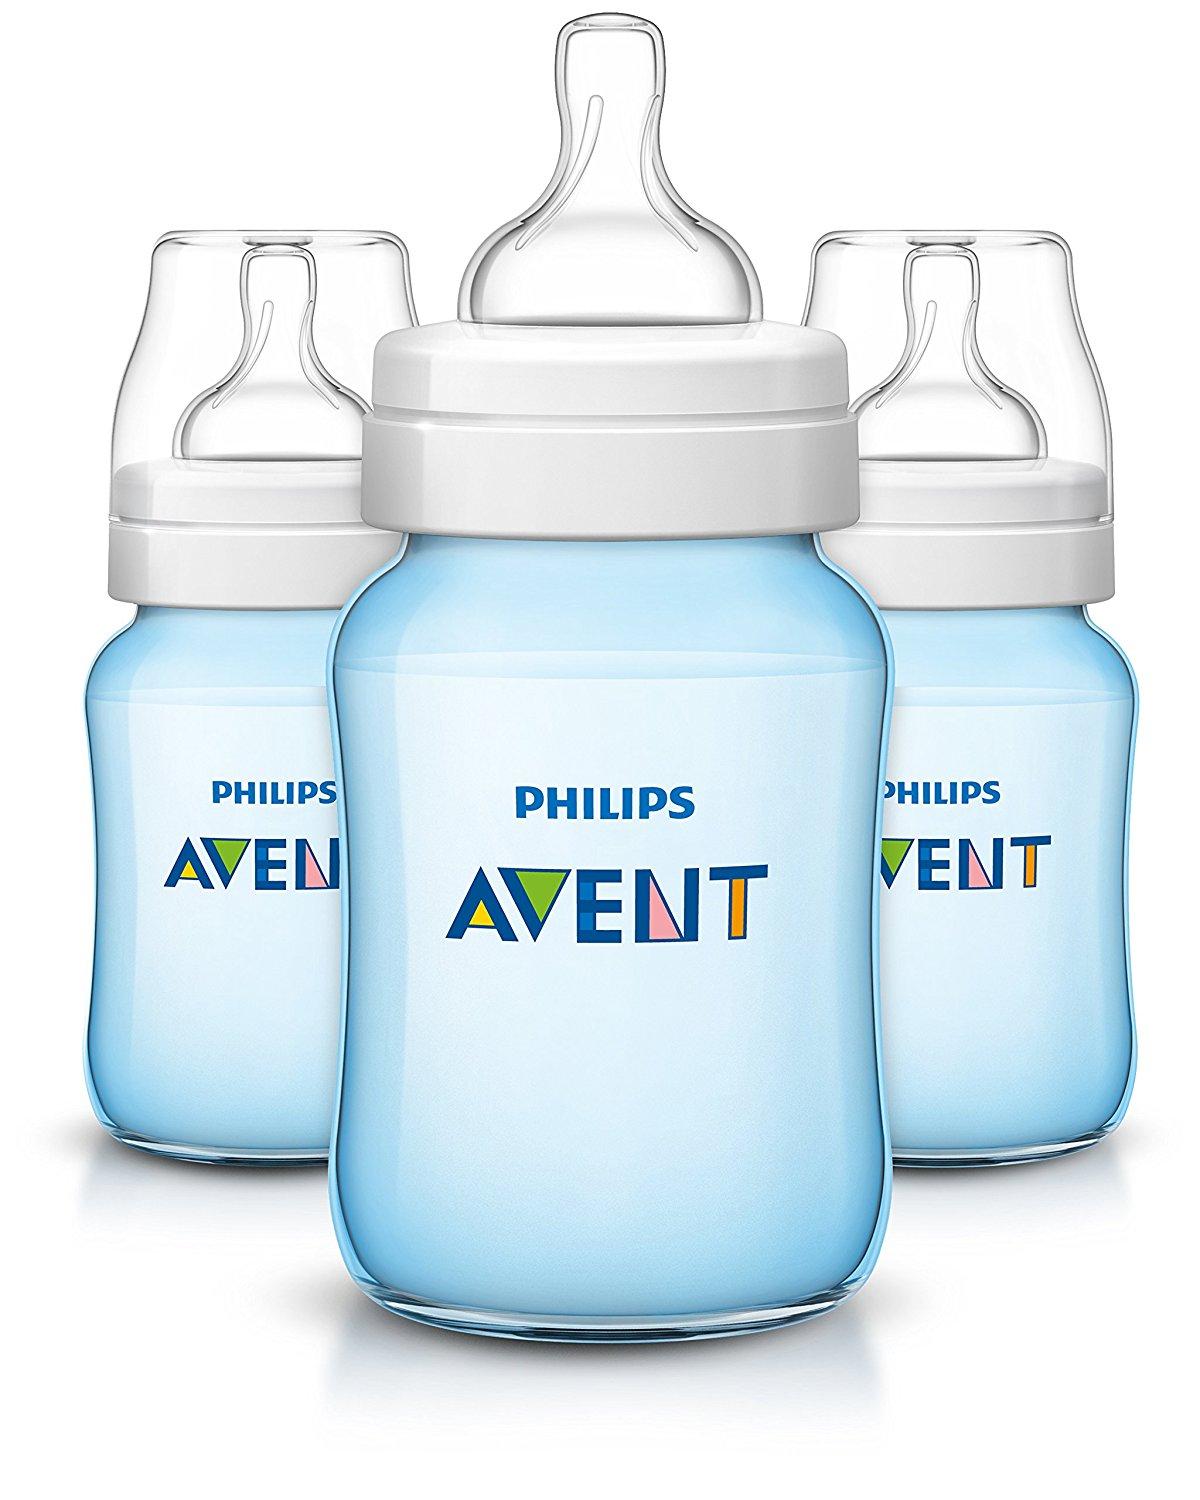 แนะนำ AVENT ขวดนม ขนาด 9 ออนซ์ (BPA FREE) - สีฟ้า (PP) แพ็ค 3 ขวด